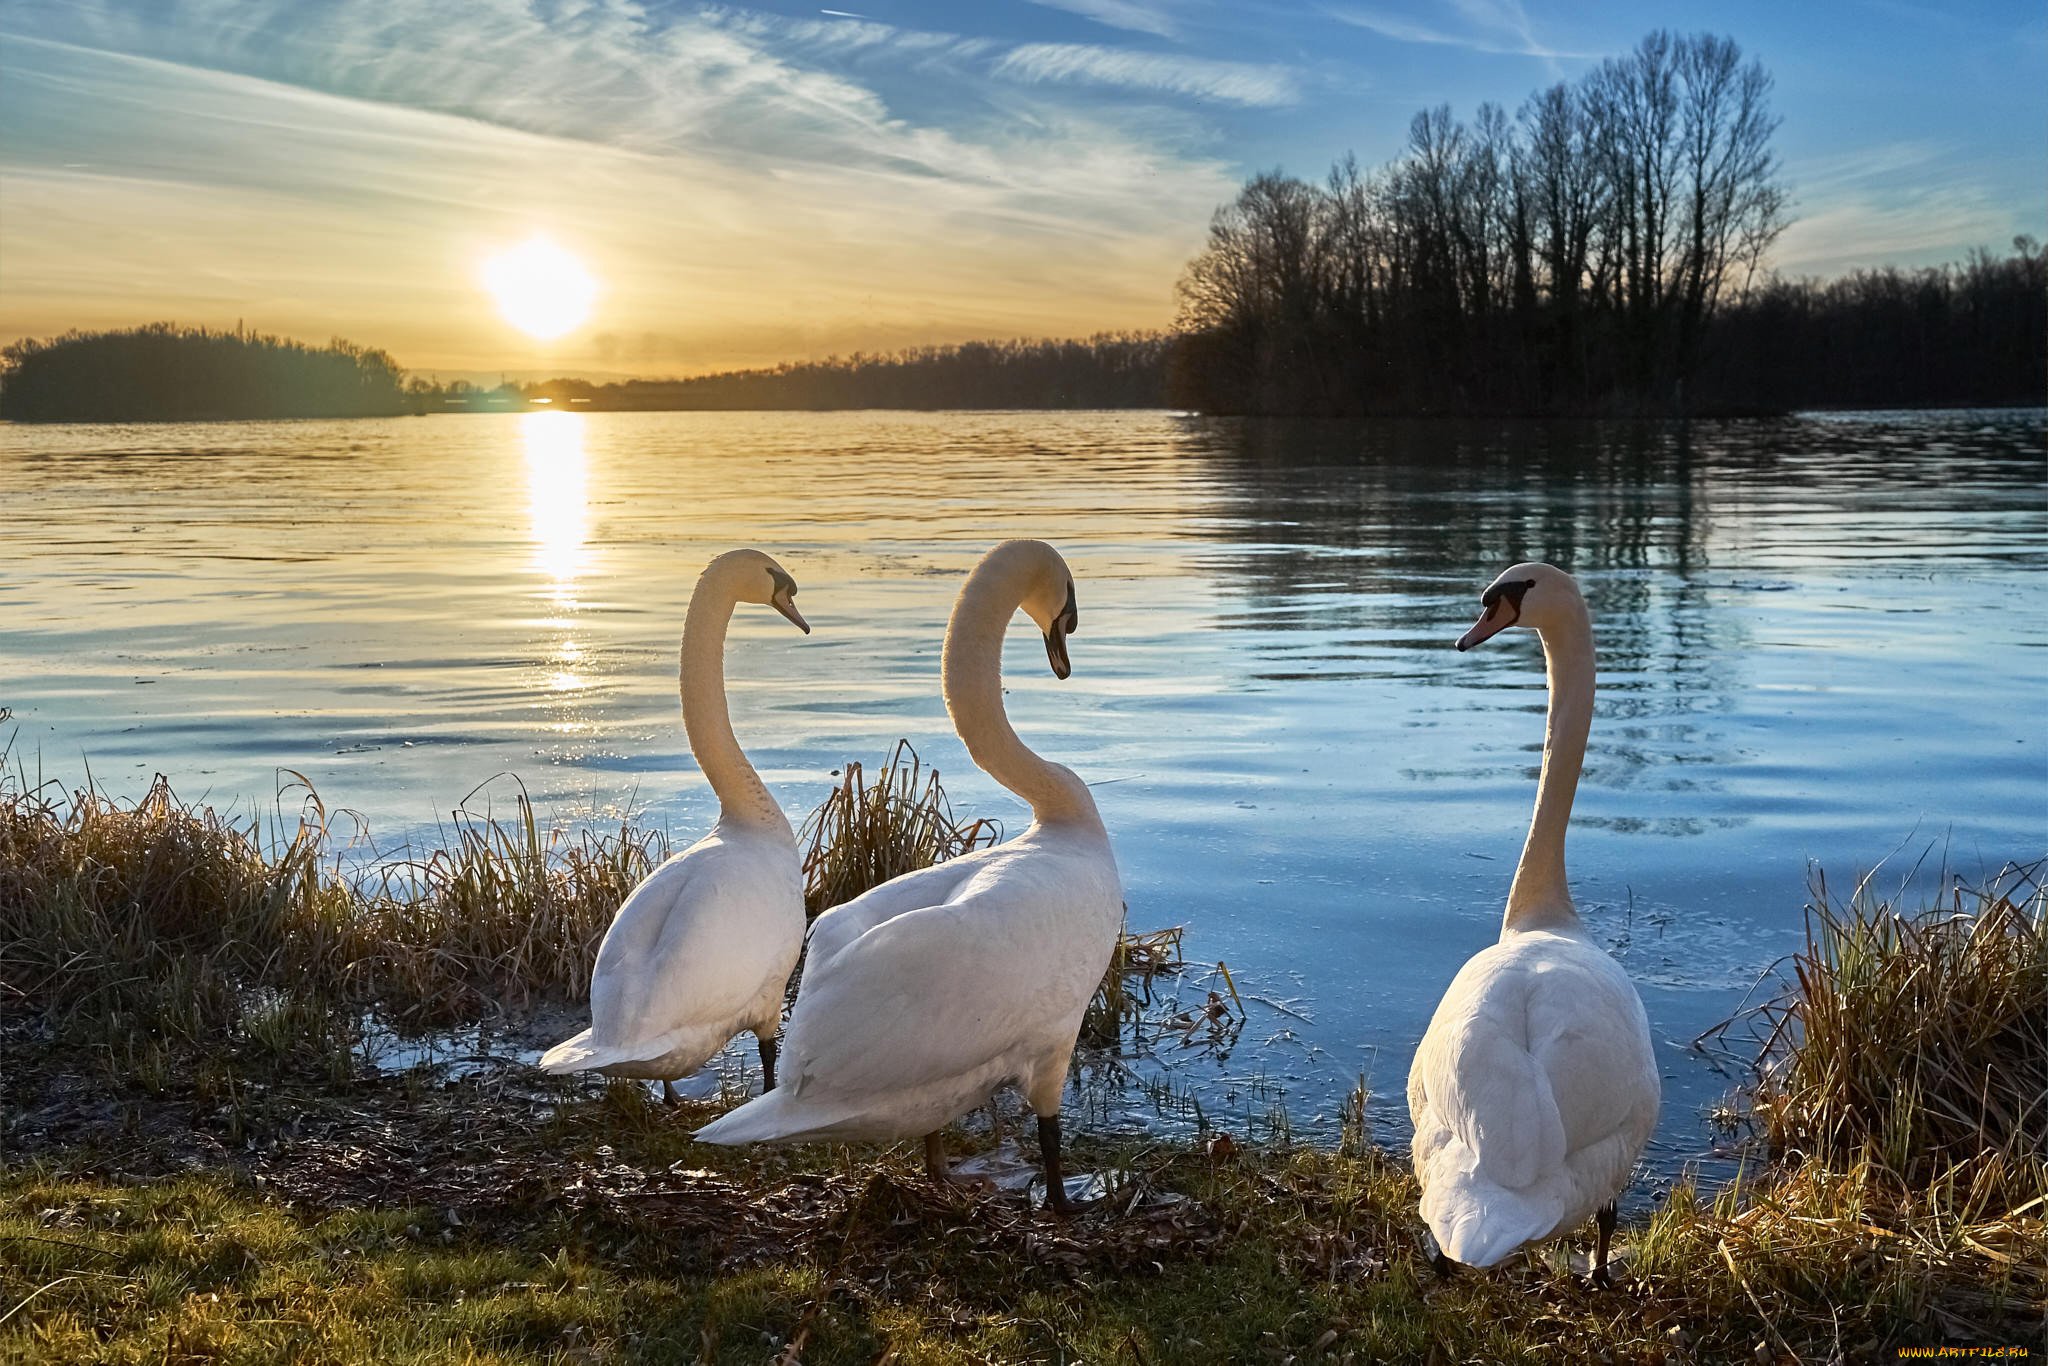 Будет озеро будут лебеди. Лебединое озеро Рязань. Изборск лебеди. Лебеди на озере. Красивые пейзажи с лебедями.